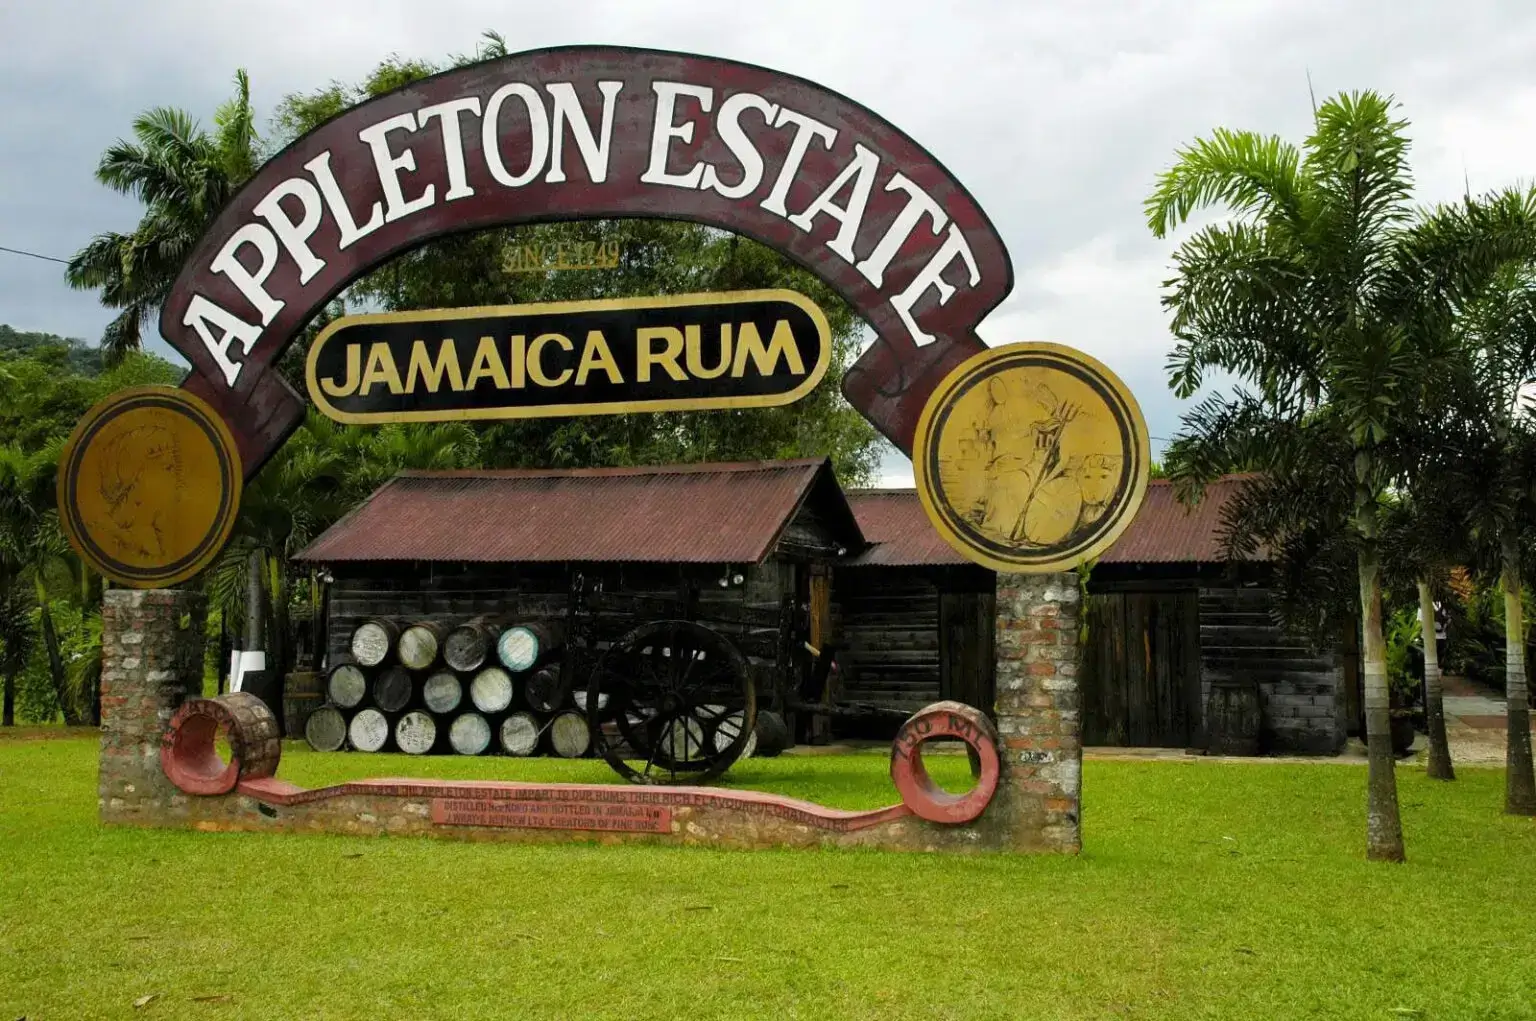 Appleton estate Rum , Jamaica